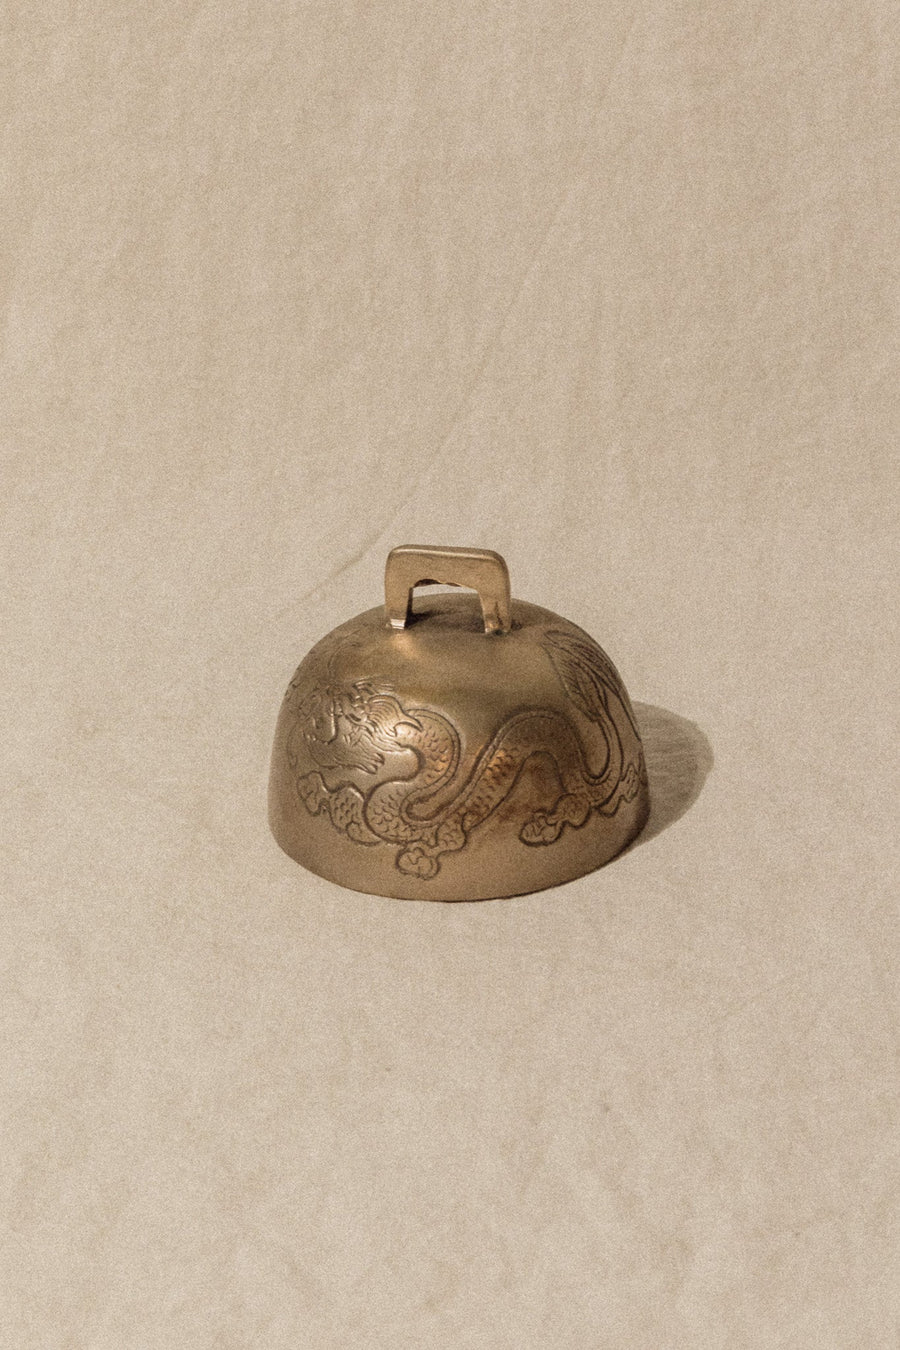 Serenity Tibet Objects Brass / FINAL SALE Dragon Tibetan Bell